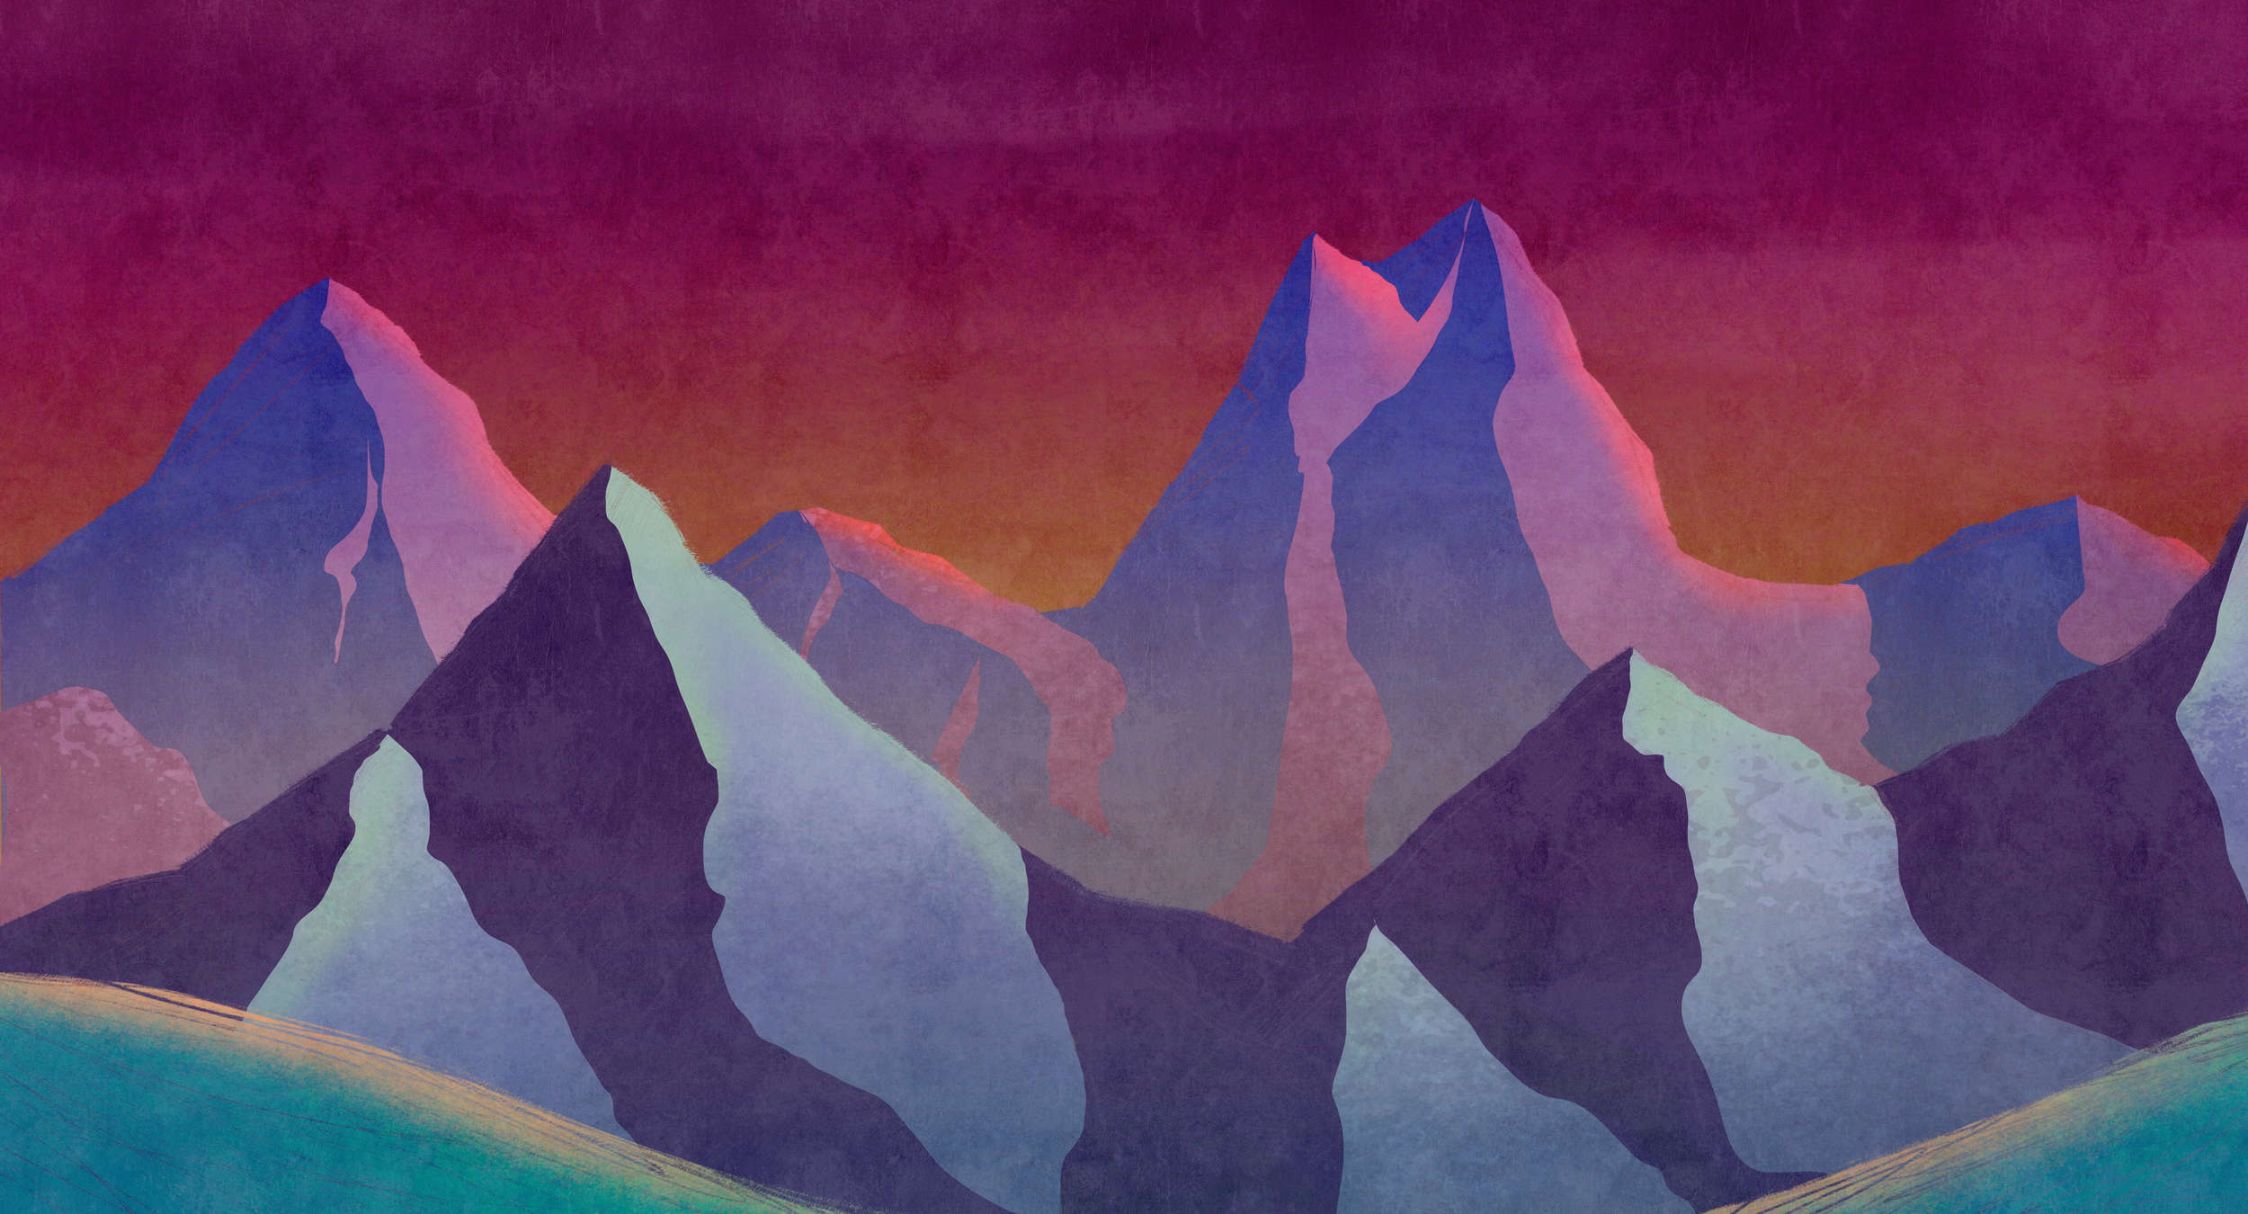             Digital behang »altitude 1« - Abstracte bergen in neonkleuren met vintage pleisterstructuur - Licht geweven stof met structuur
        